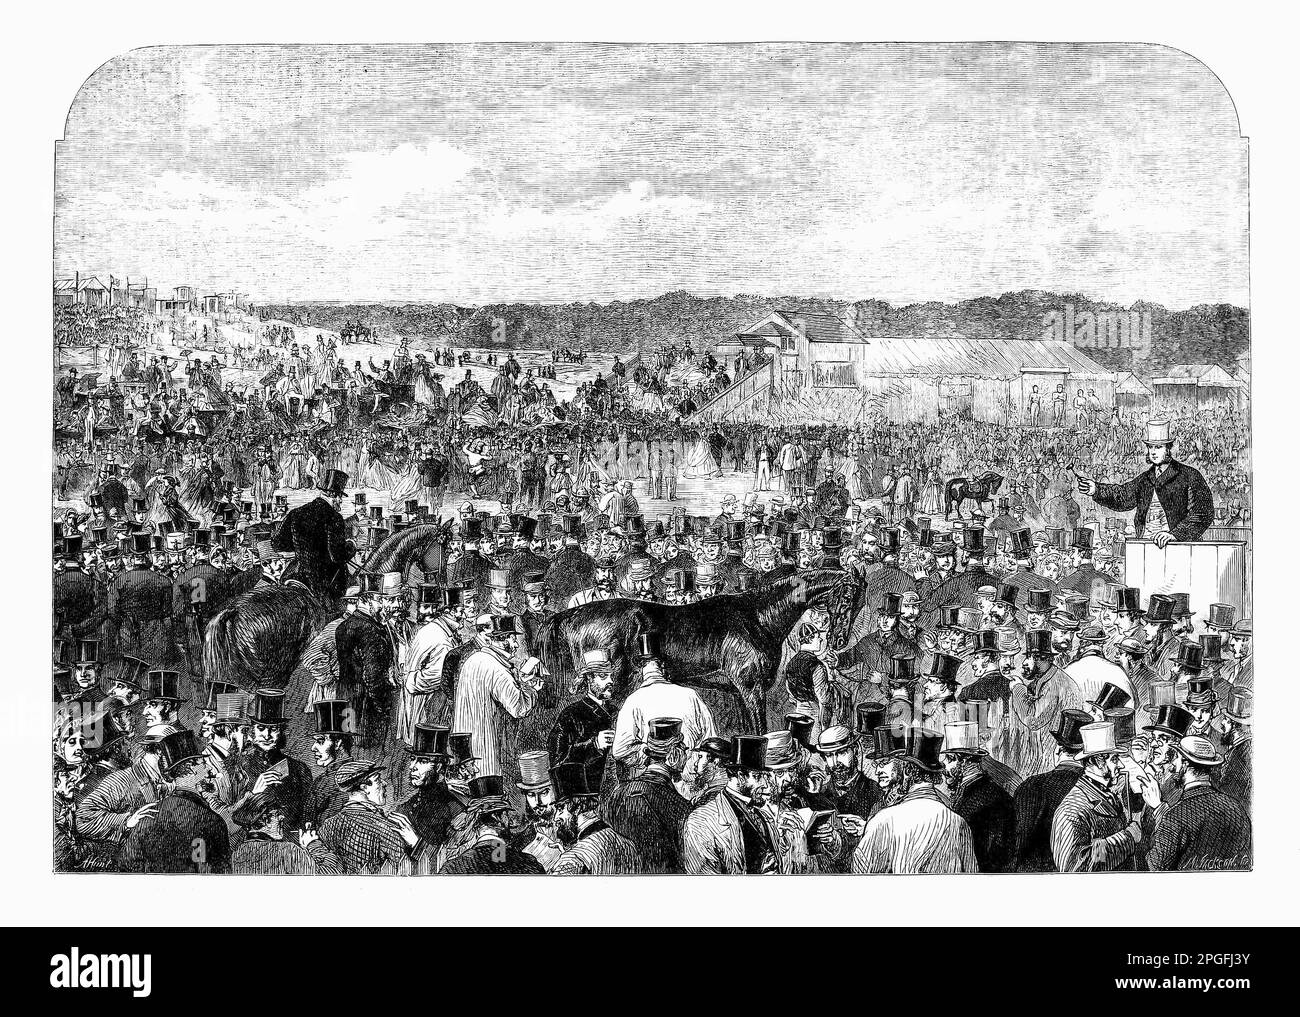 Entouré de foules de punters, la vente du cheval gagnant à l'hippodrome d'Epsom, Surrey, Angleterre, a lieu en 1863. Banque D'Images